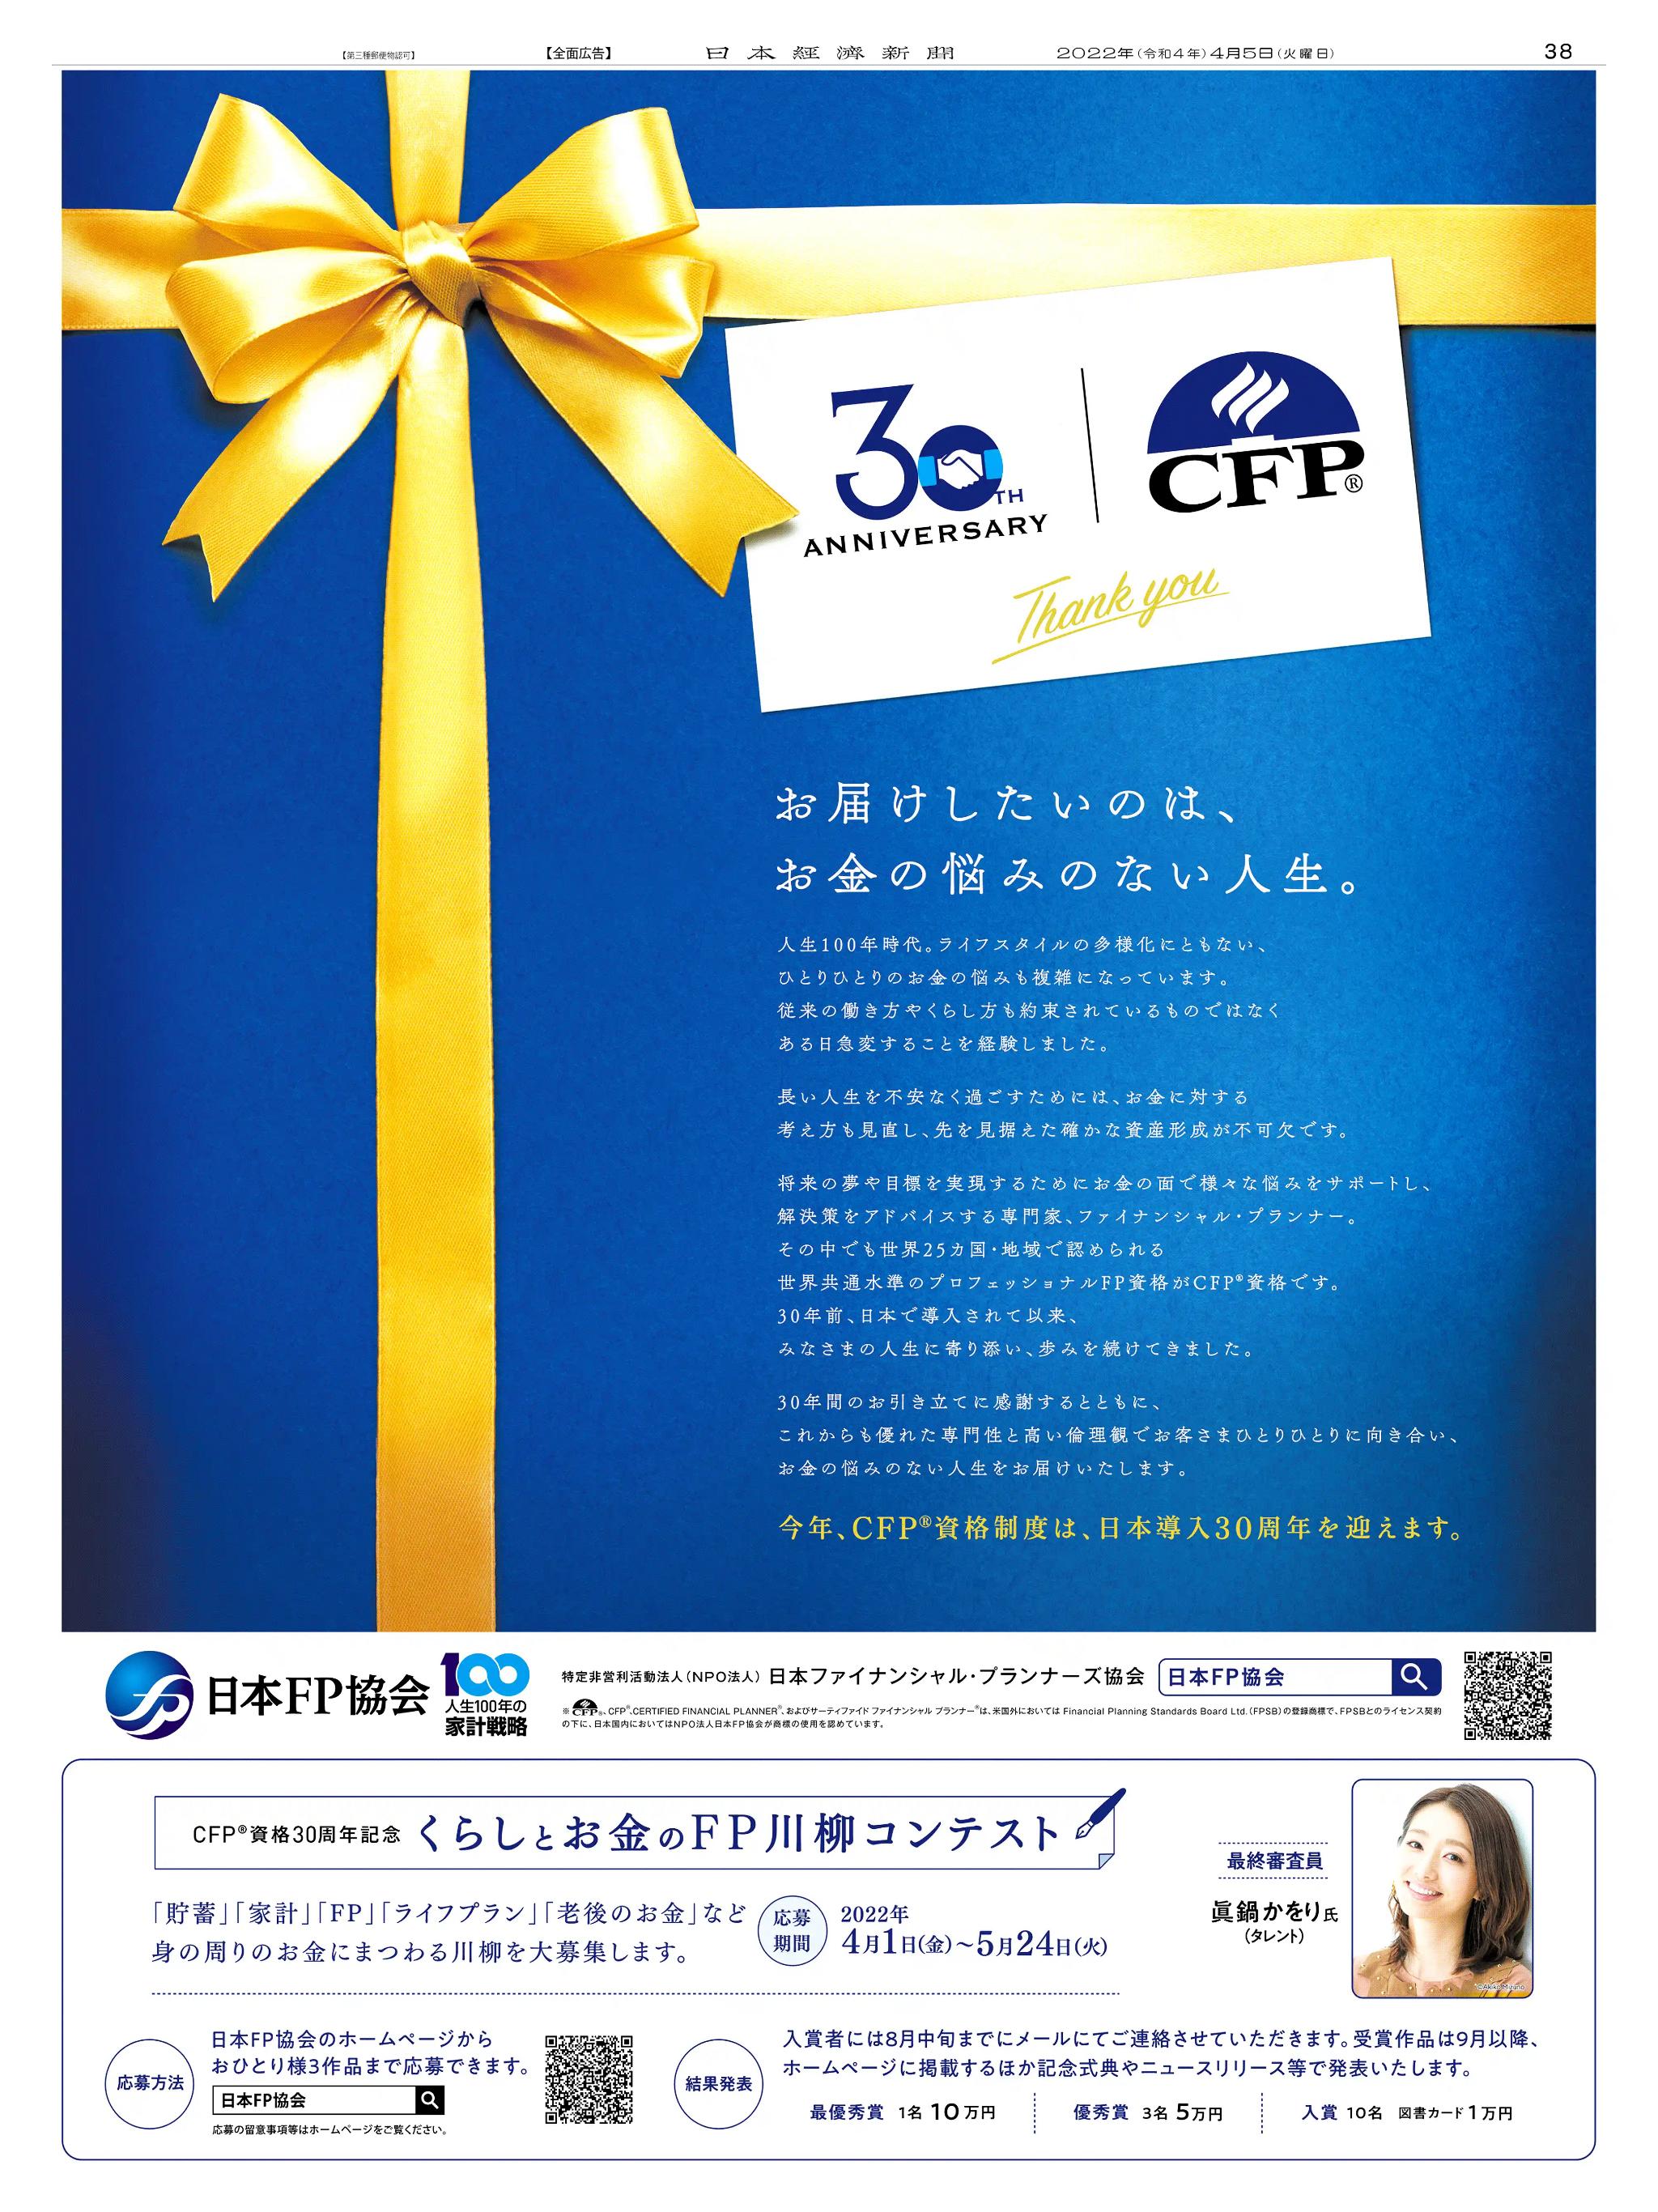 周年記念広告事例 「CFP資格 日本導入30周年」